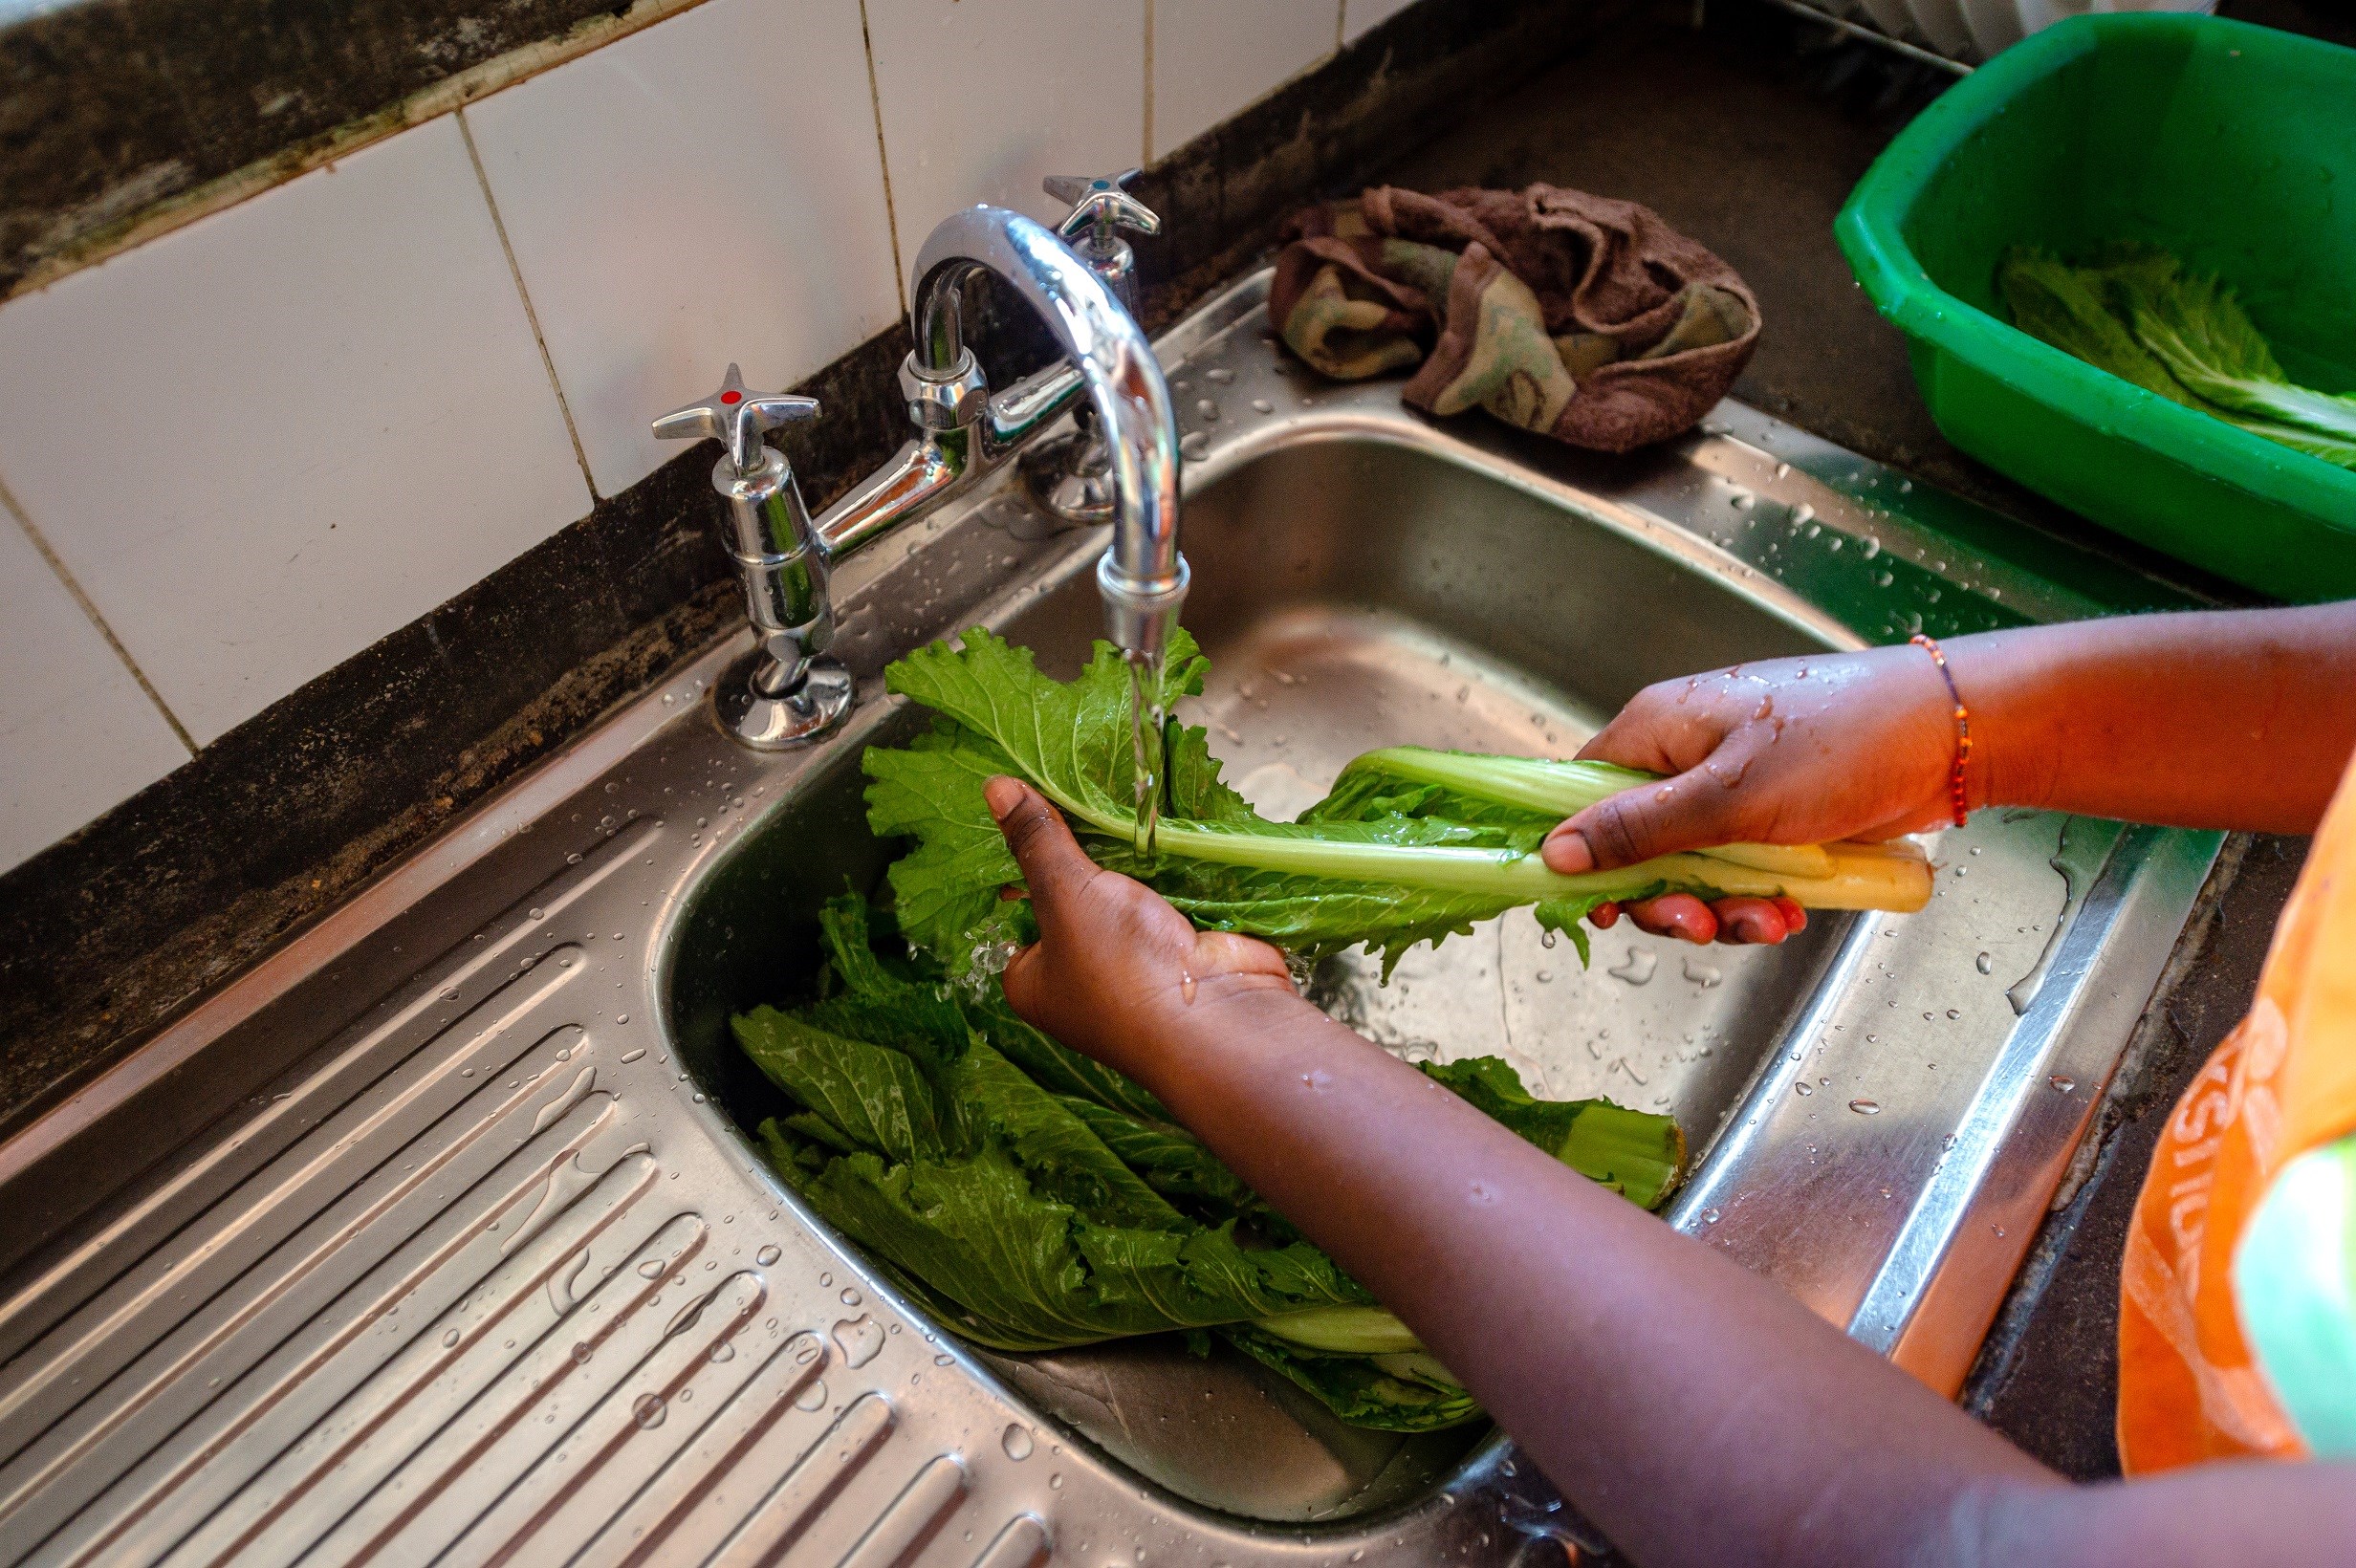  Kl 12.30 Alle barna har faste dager hvor de hjelper til med å lage mat. Nani vasker spinatblader og broren kutter dem i biter. I dag er det kylling, ris og grønnsaker på menyen.